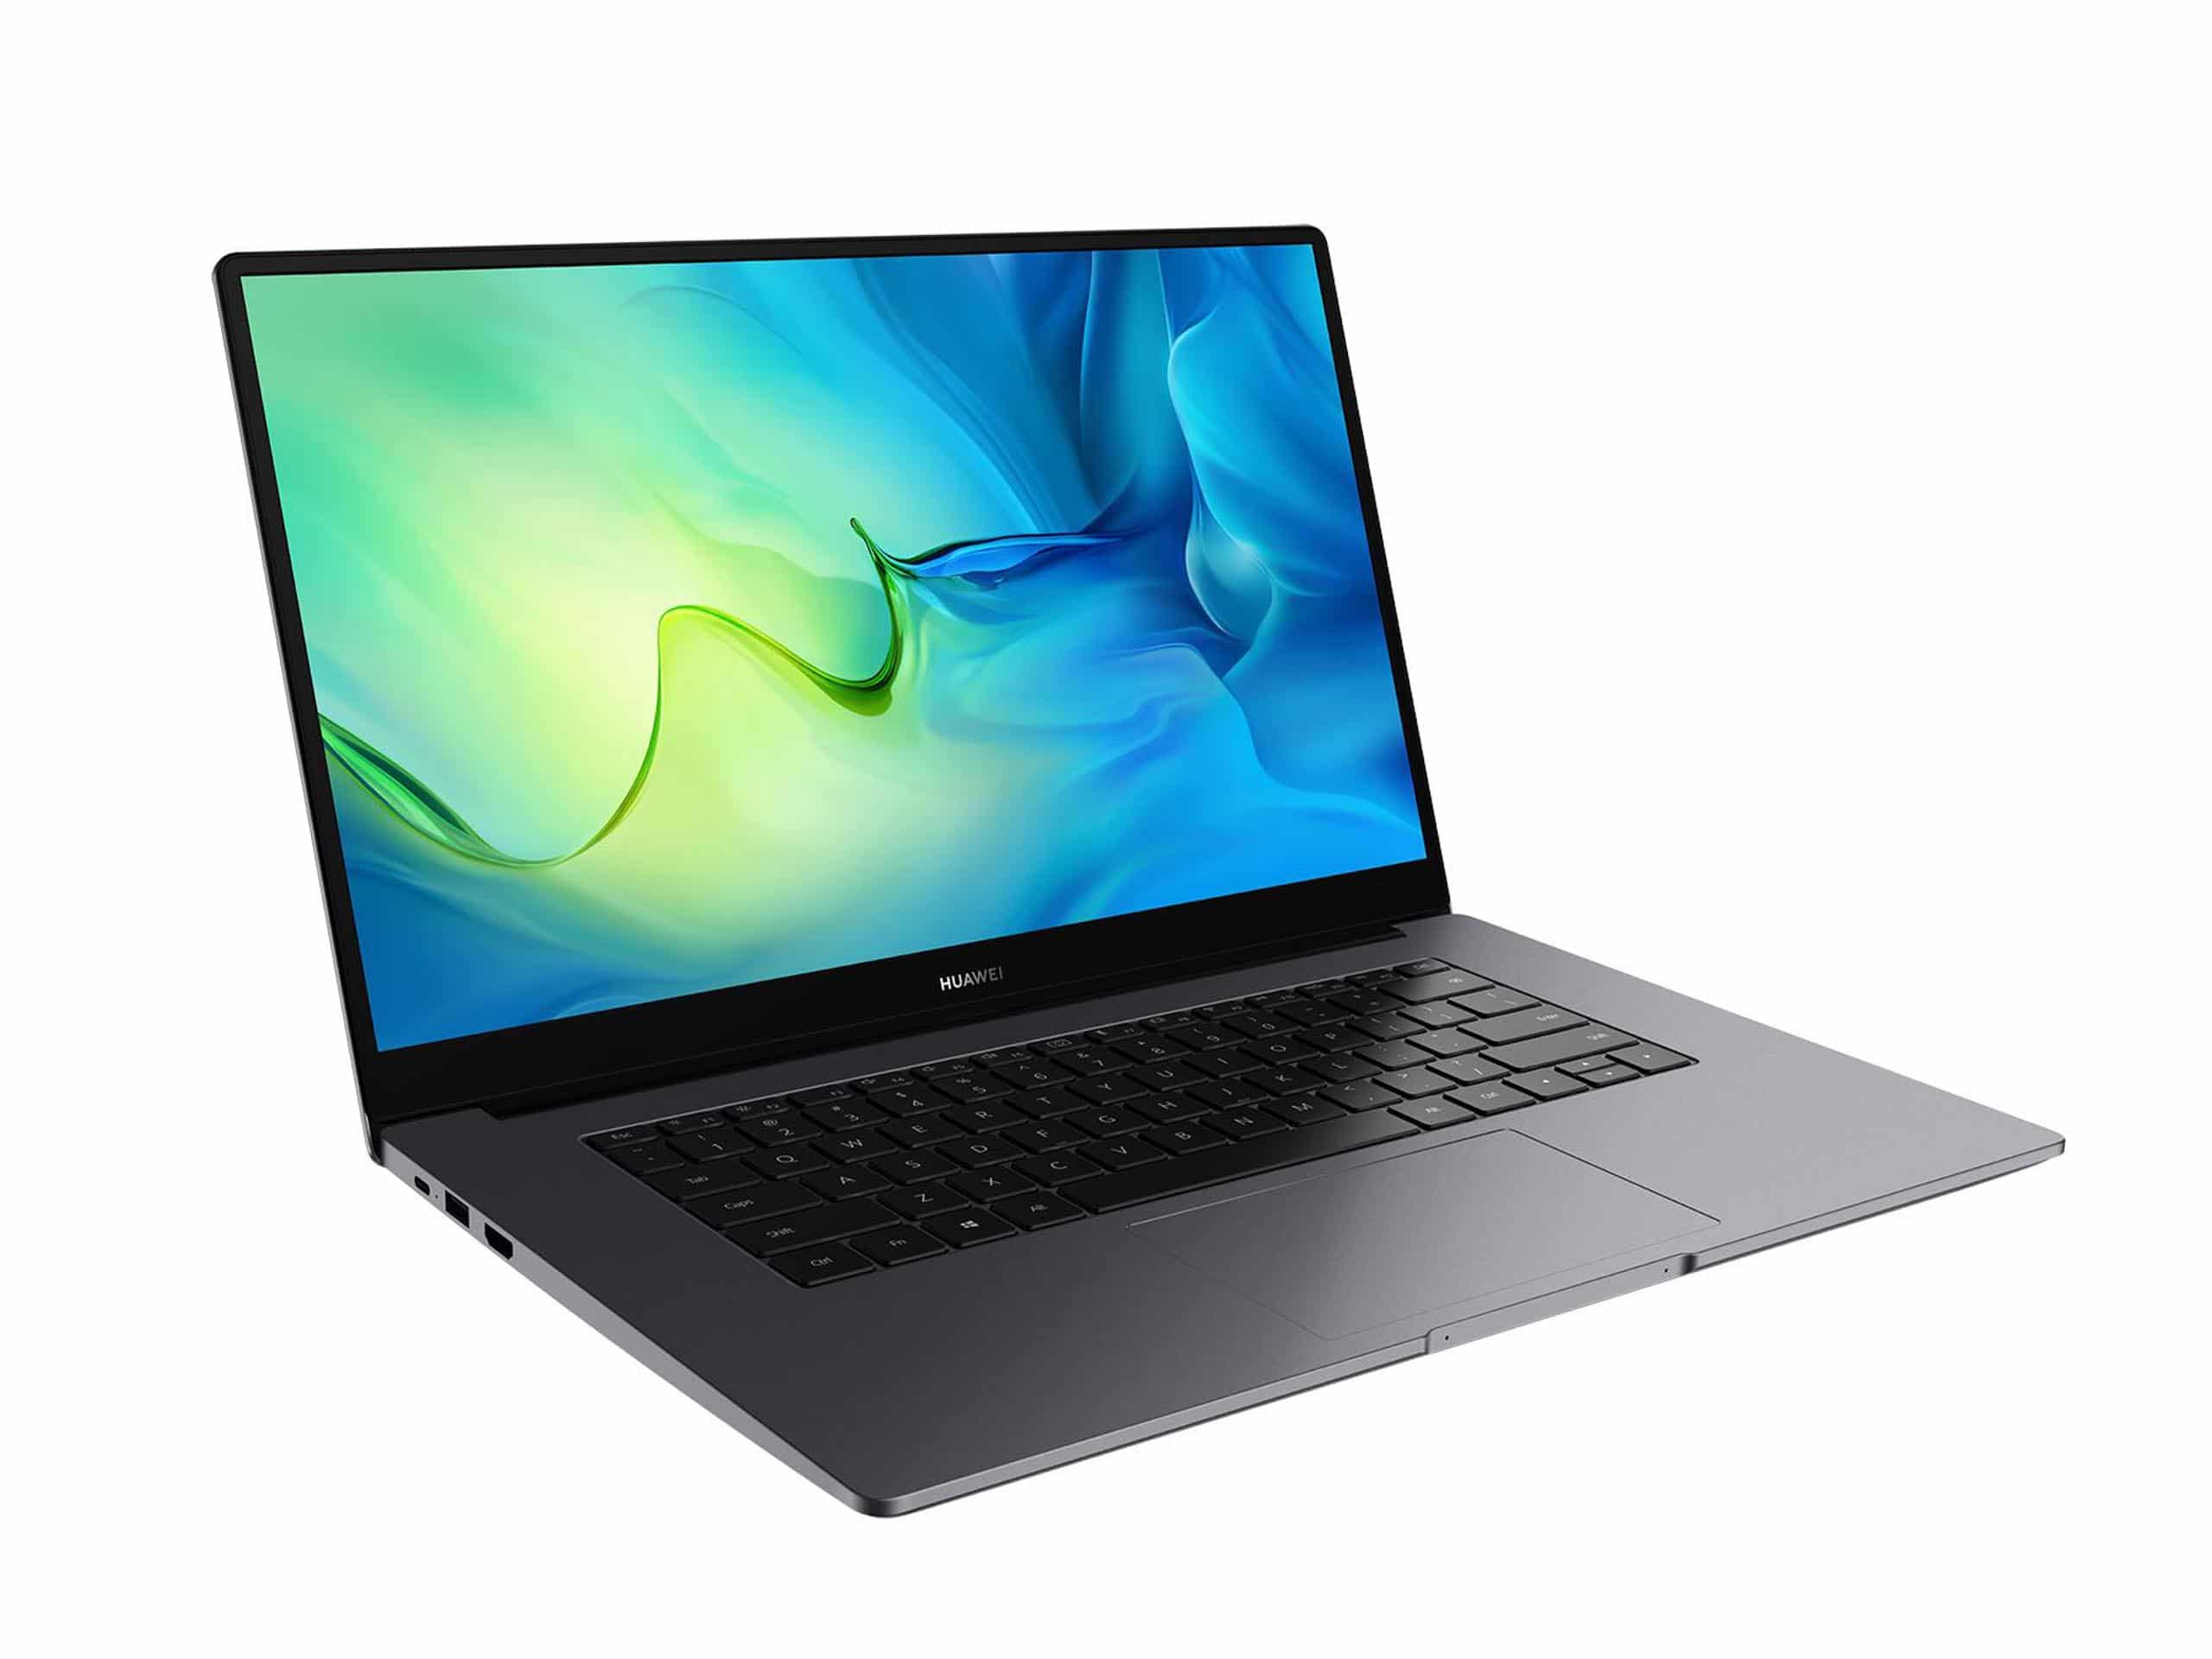 Huawei ra mắt laptop MateBook D 15 với màn hình tràn viền, khoá vân tay, giá 15,990,000 VND